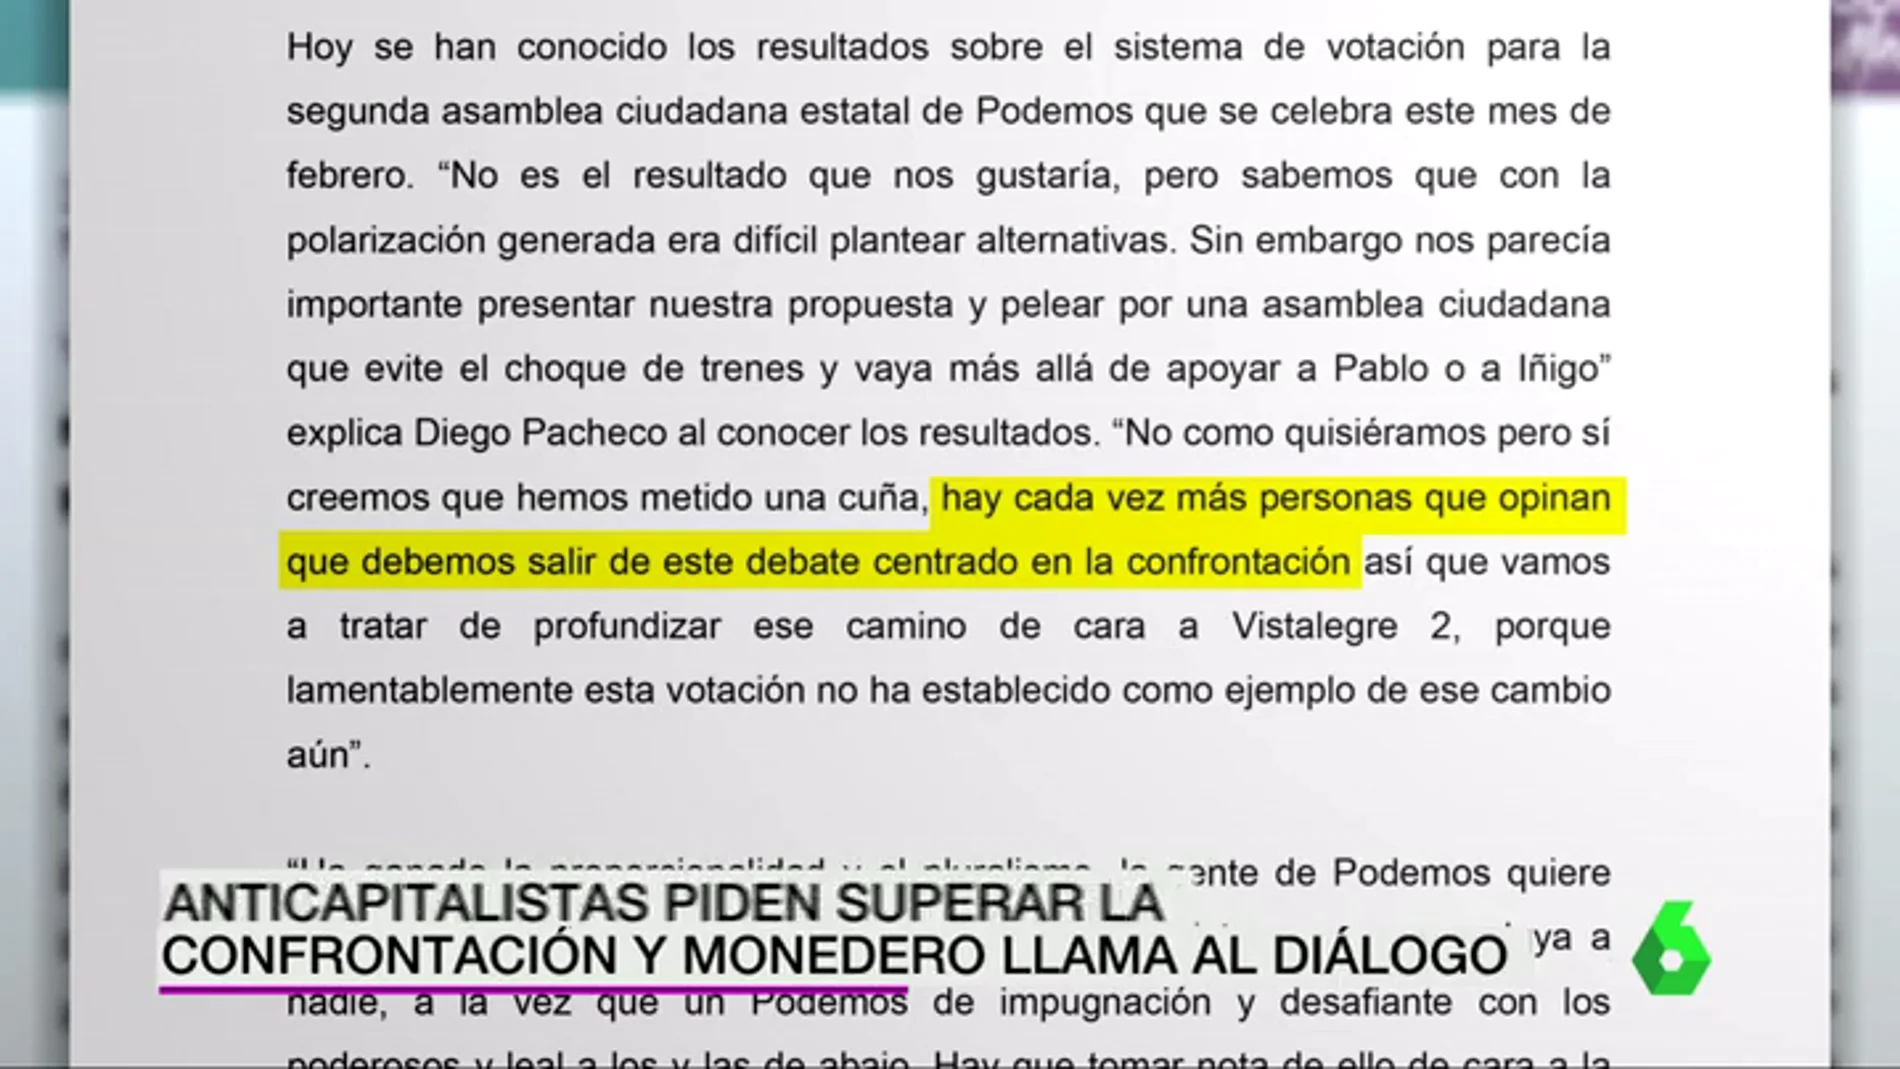 Frame 4.216066 de: Los anticapitalistas de Podemos piden superar la confrontación y Monedero llama al diálogo